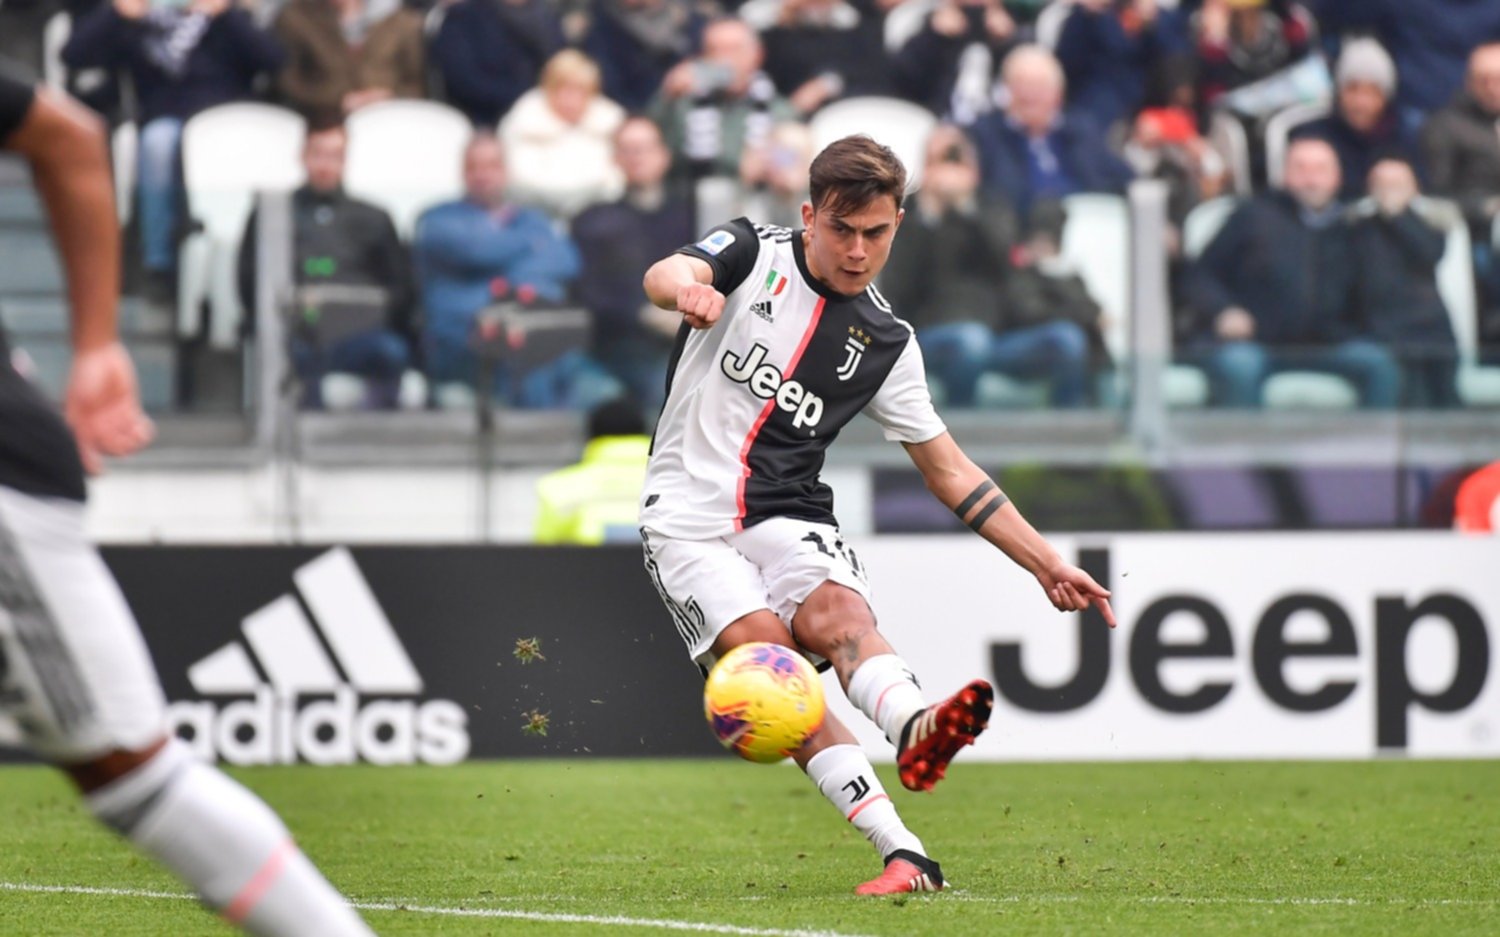 Triunfo y punta del Calcio para Juventus gracias a un gol magistral de Dybala